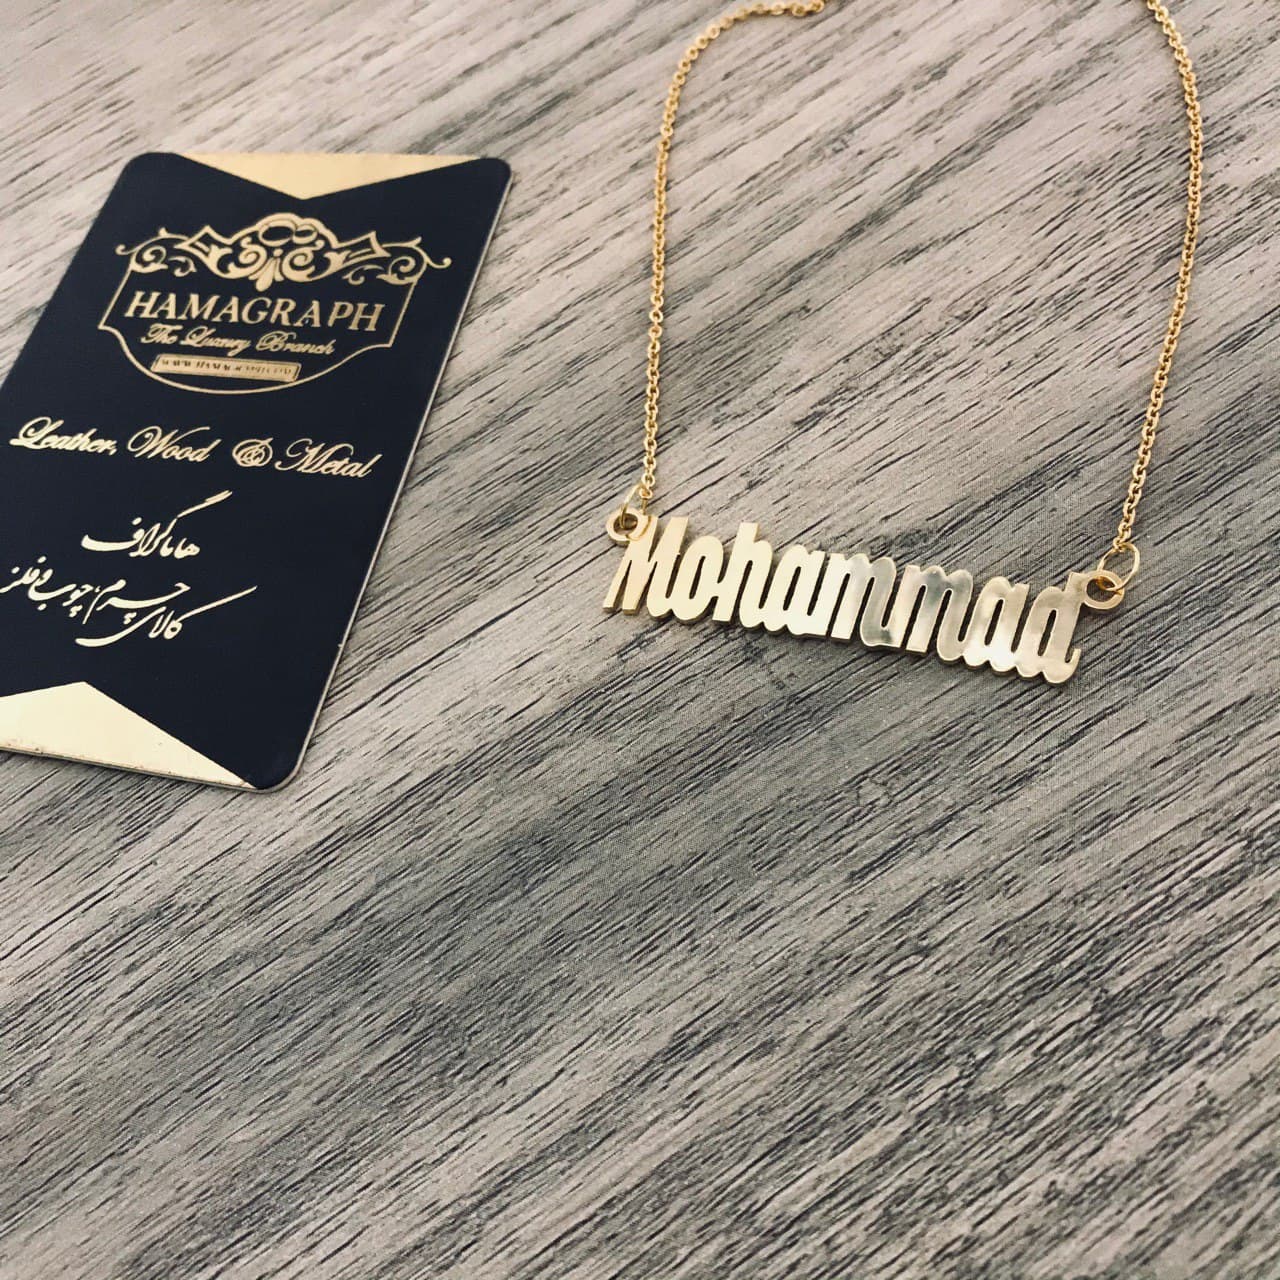 گردنبند استیل طلایی با طرح اسم mohammad